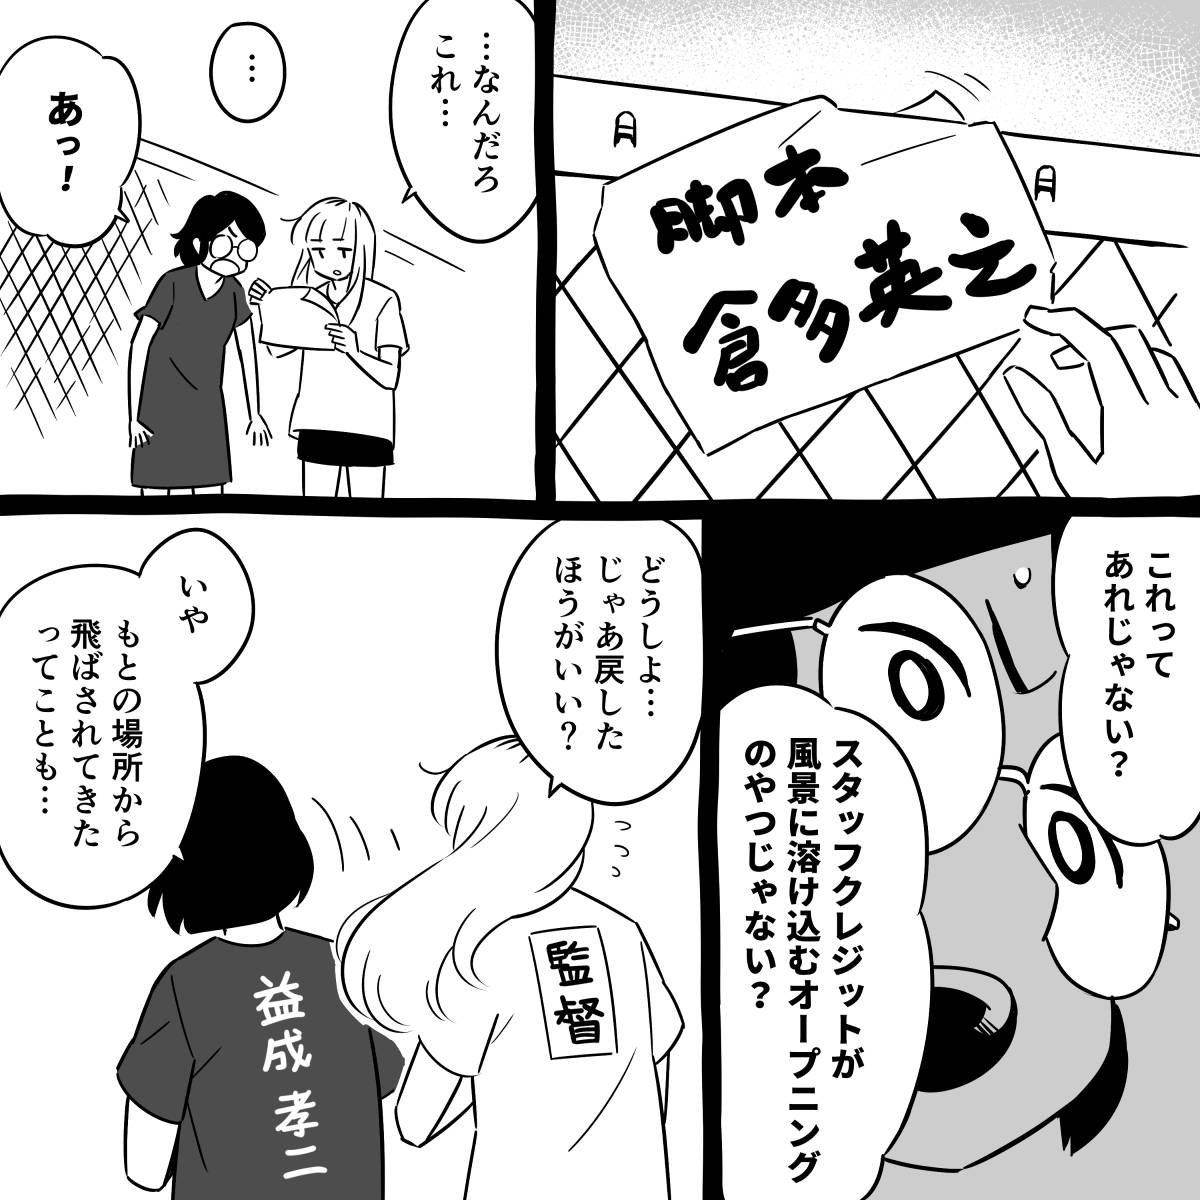 マンガ「スタッフクレジット」  #漫画が読めるハッシュタグ